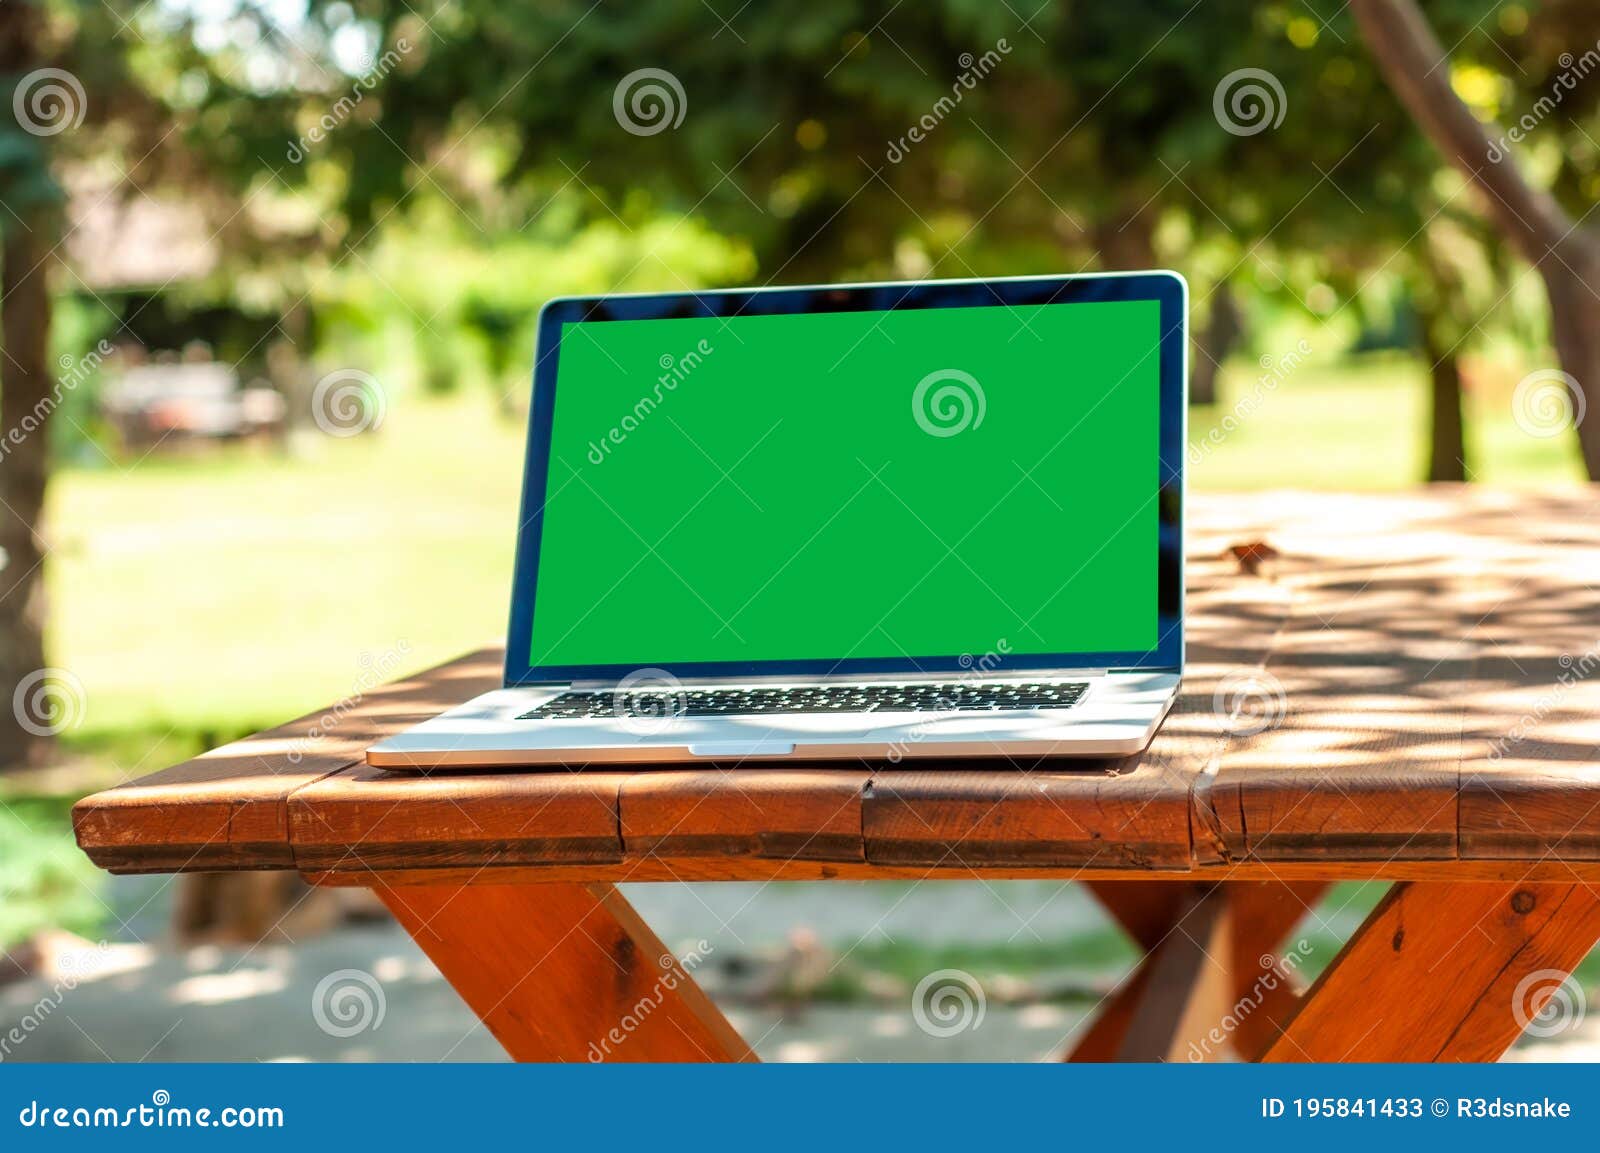 Xem trên Laptop PC với màn hình xanh trên bàn trong vườn, bạn sẽ không tin vào mắt mình khi chứng kiến khả năng tạo nên những không gian tuyệt đẹp với nền trường xanh chroma key. Khám phá ngay hình ảnh này để trải nghiệm sự kỳ diệu của công nghệ ảo tuyệt vời nhất!